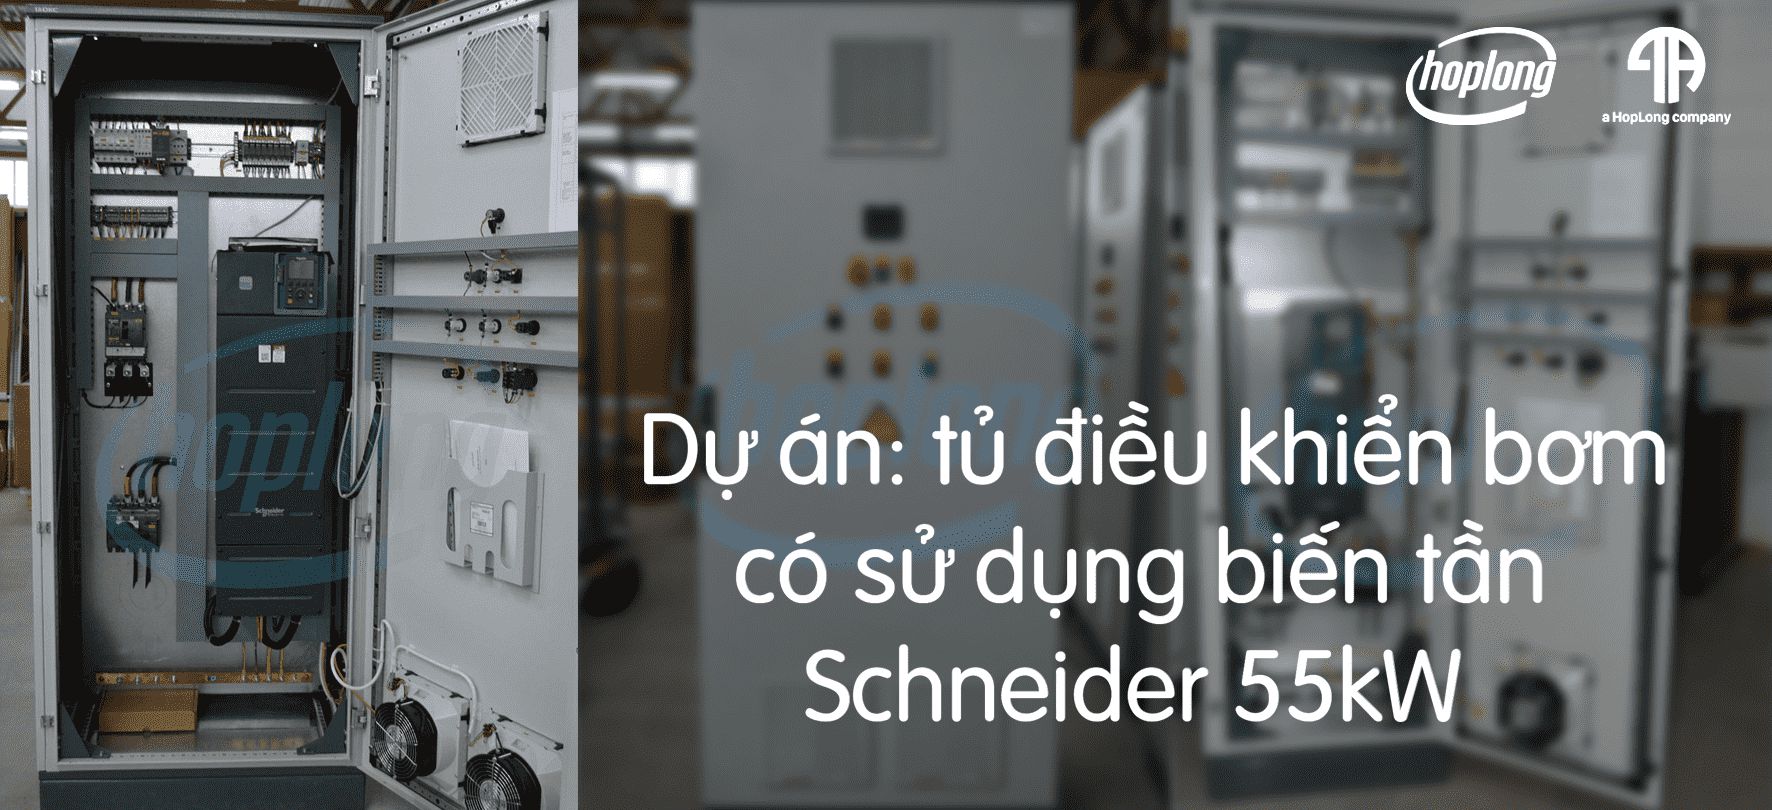 Dự án: Tủ điều khiển bơm có sử dụng biến tần Schneider 55kW